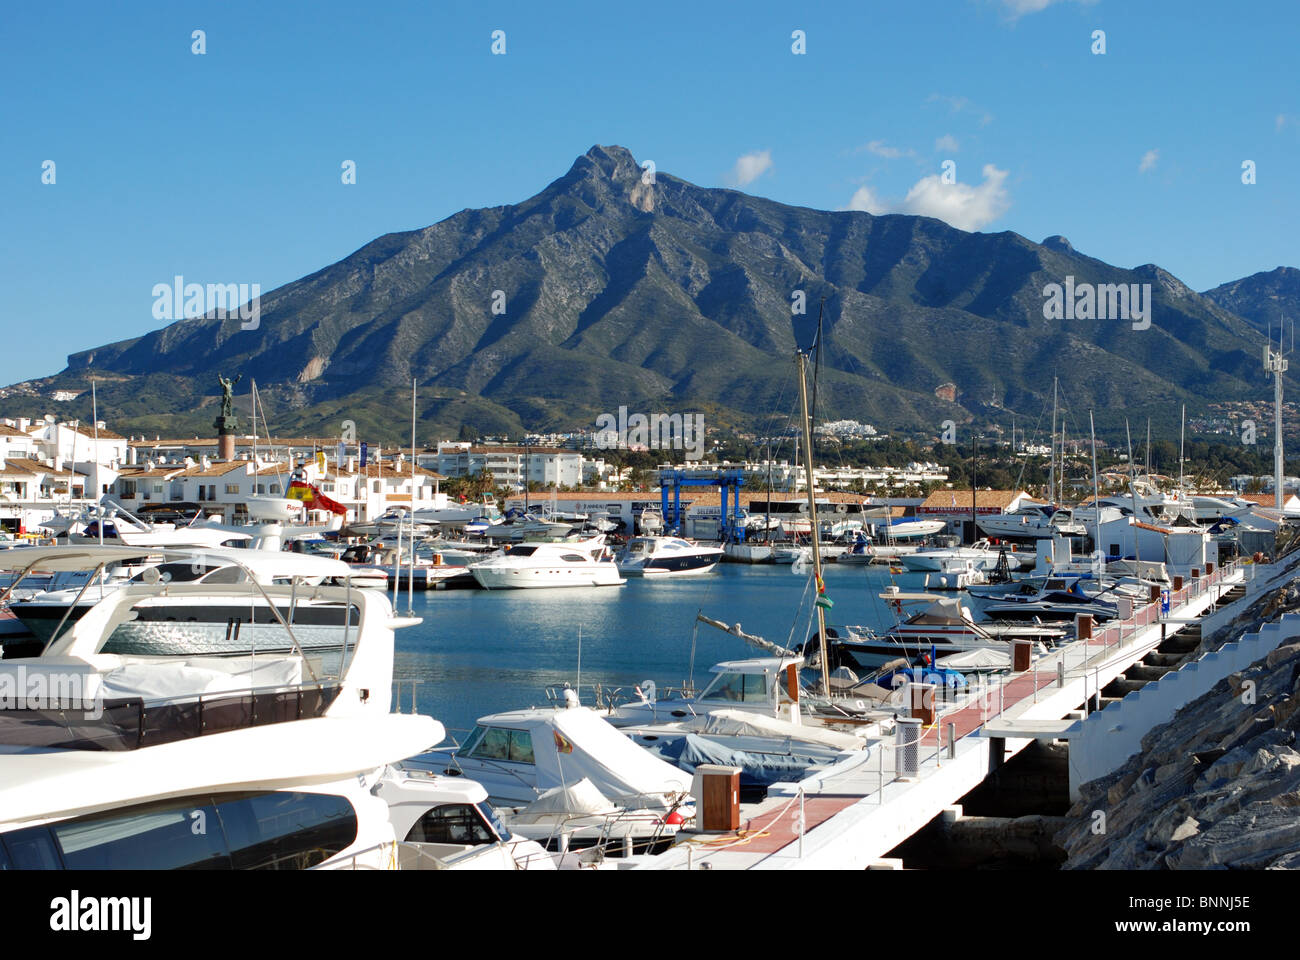 Le barche nel porto di Puerto Banus a Marbella, Costa del Sol, provincia di Malaga, Andalusia, Spagna, Europa occidentale. Foto Stock